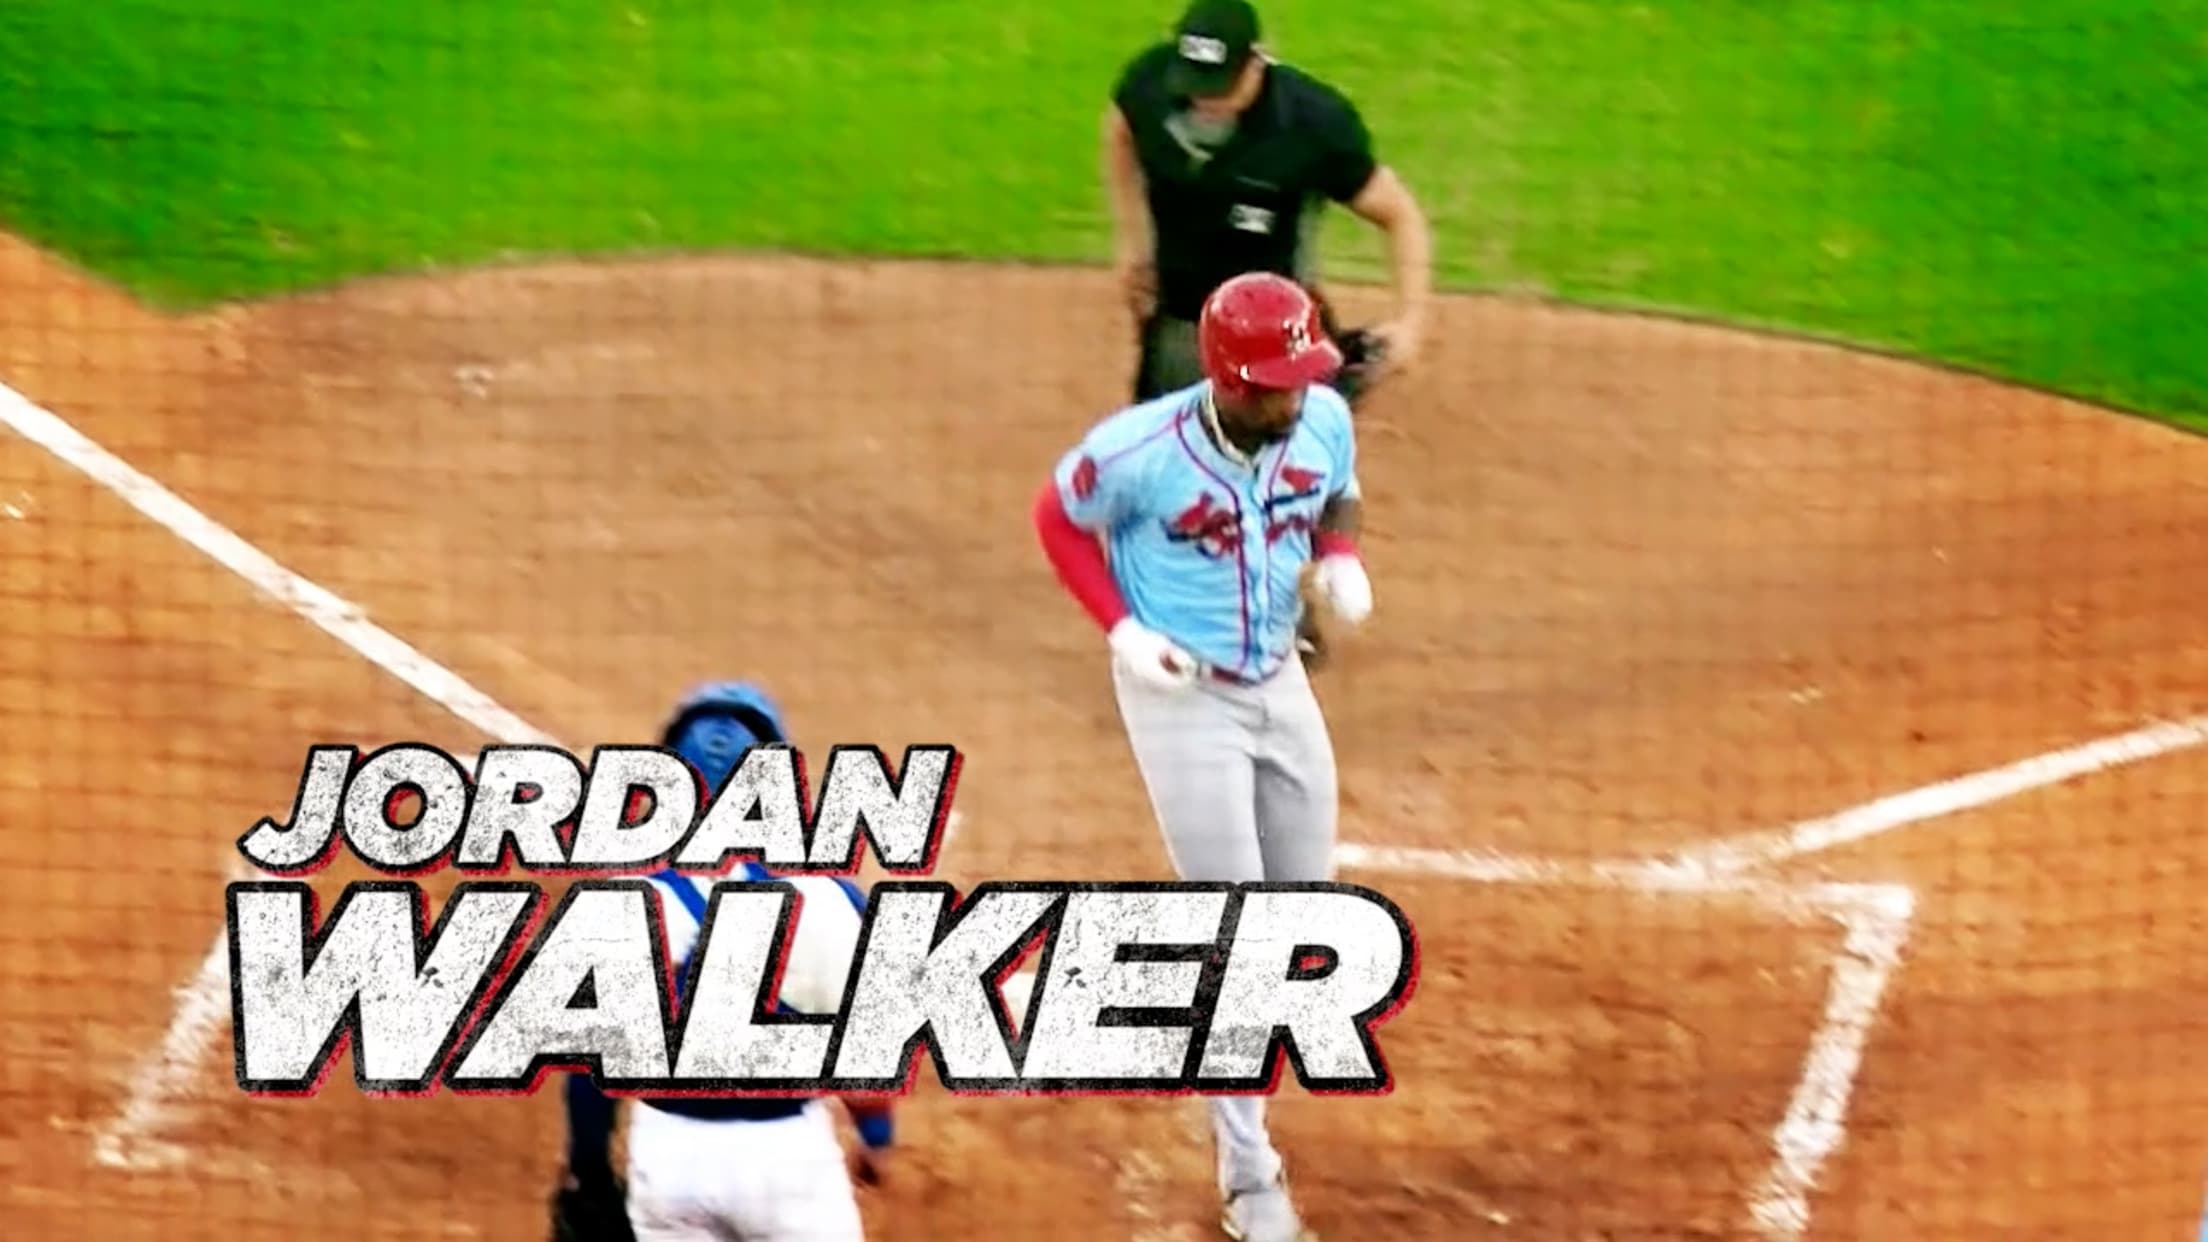 Jordan Walker to make MLB debut